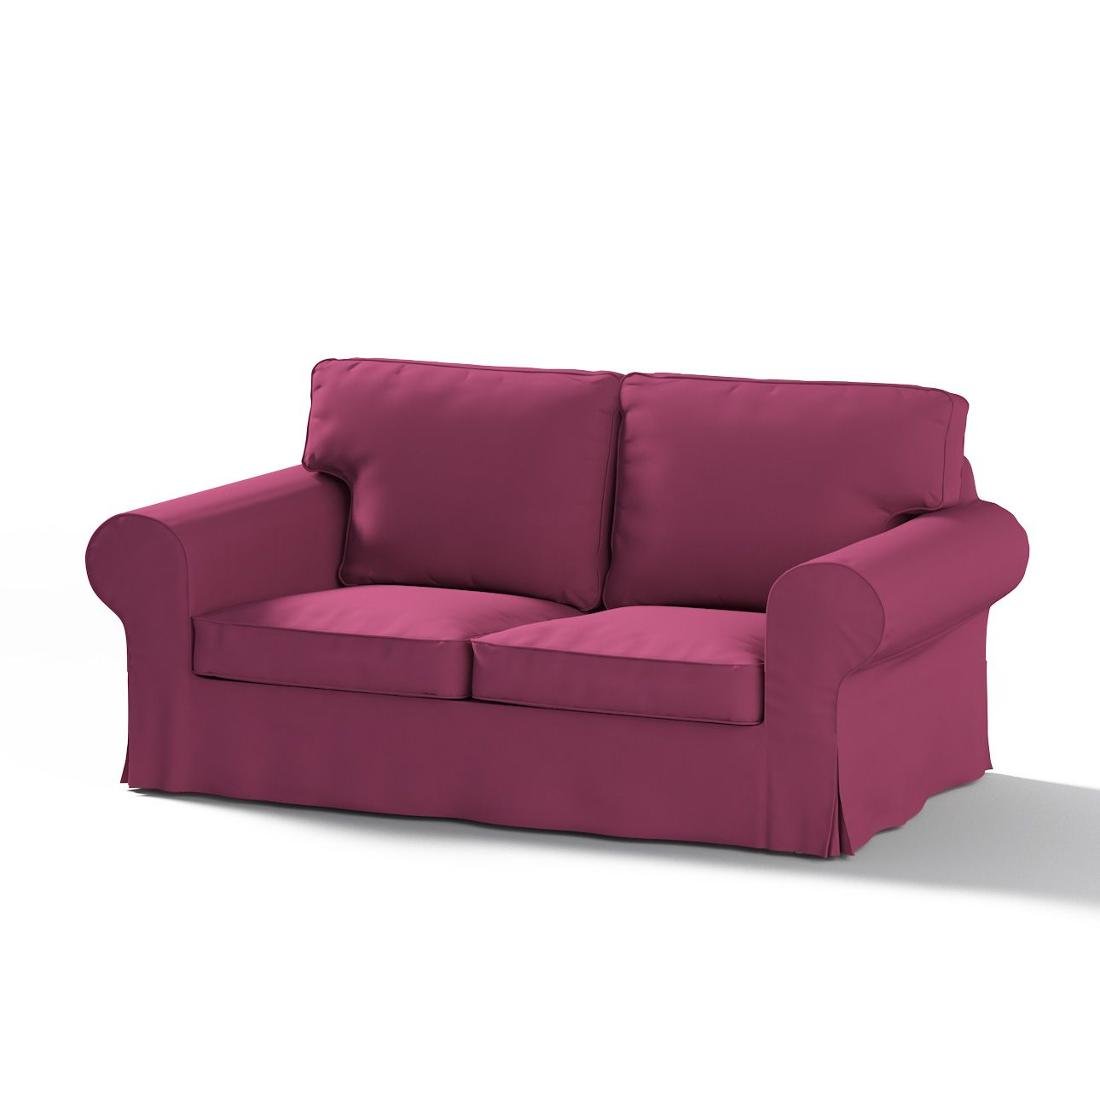 Dekoria Pokrowiec na sofę Ektorp 2-osobową rozkładaną model po 2012 Plum śliwkowy) 200 x 90 x 73 cm Cotton Panama 1016-702-32